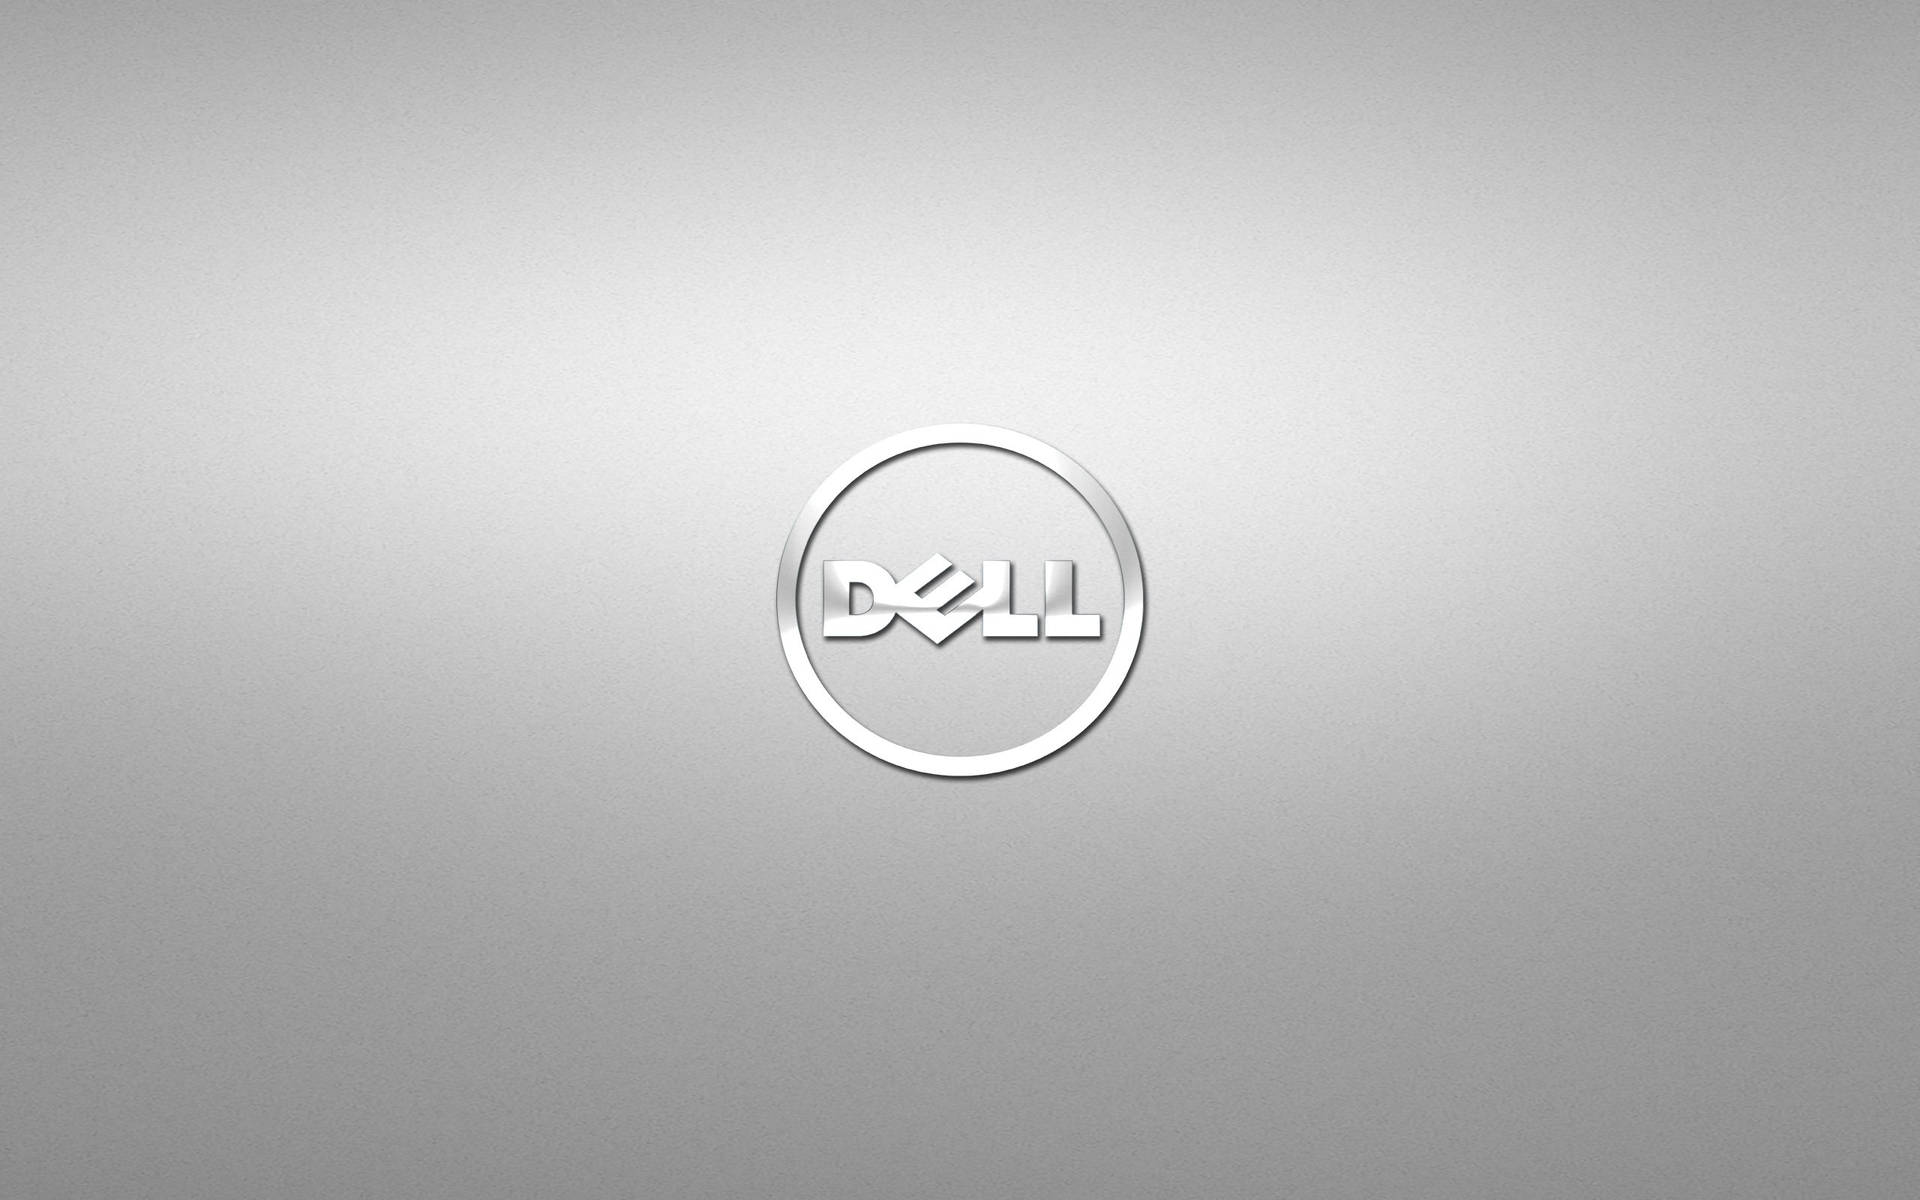 Sølv Dell HD Logo Wallpaper: Wallpaper